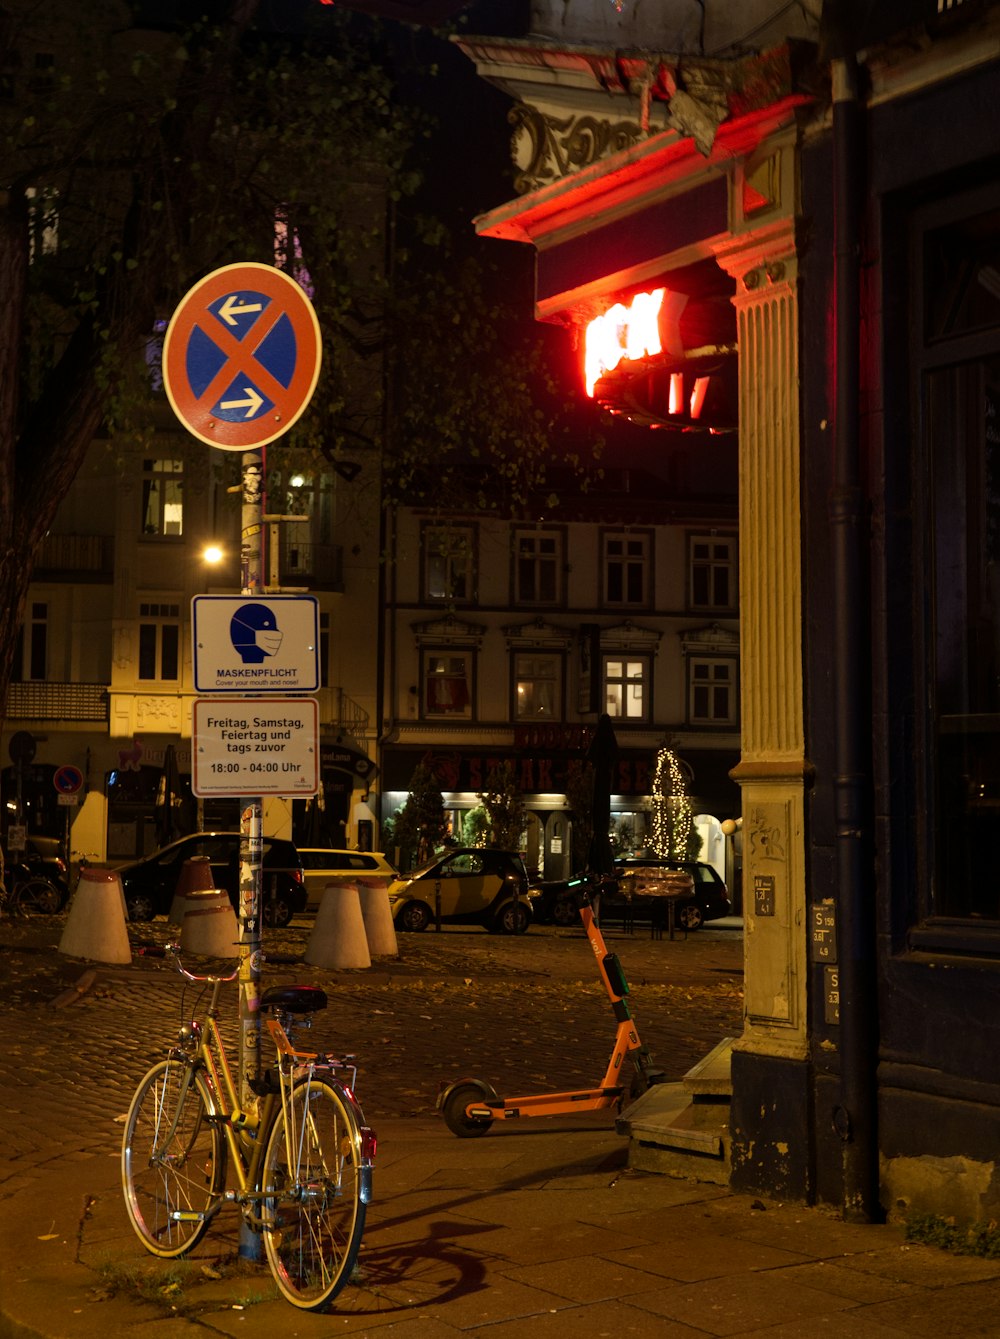 Fahrrad nachts neben der Ladenfront geparkt